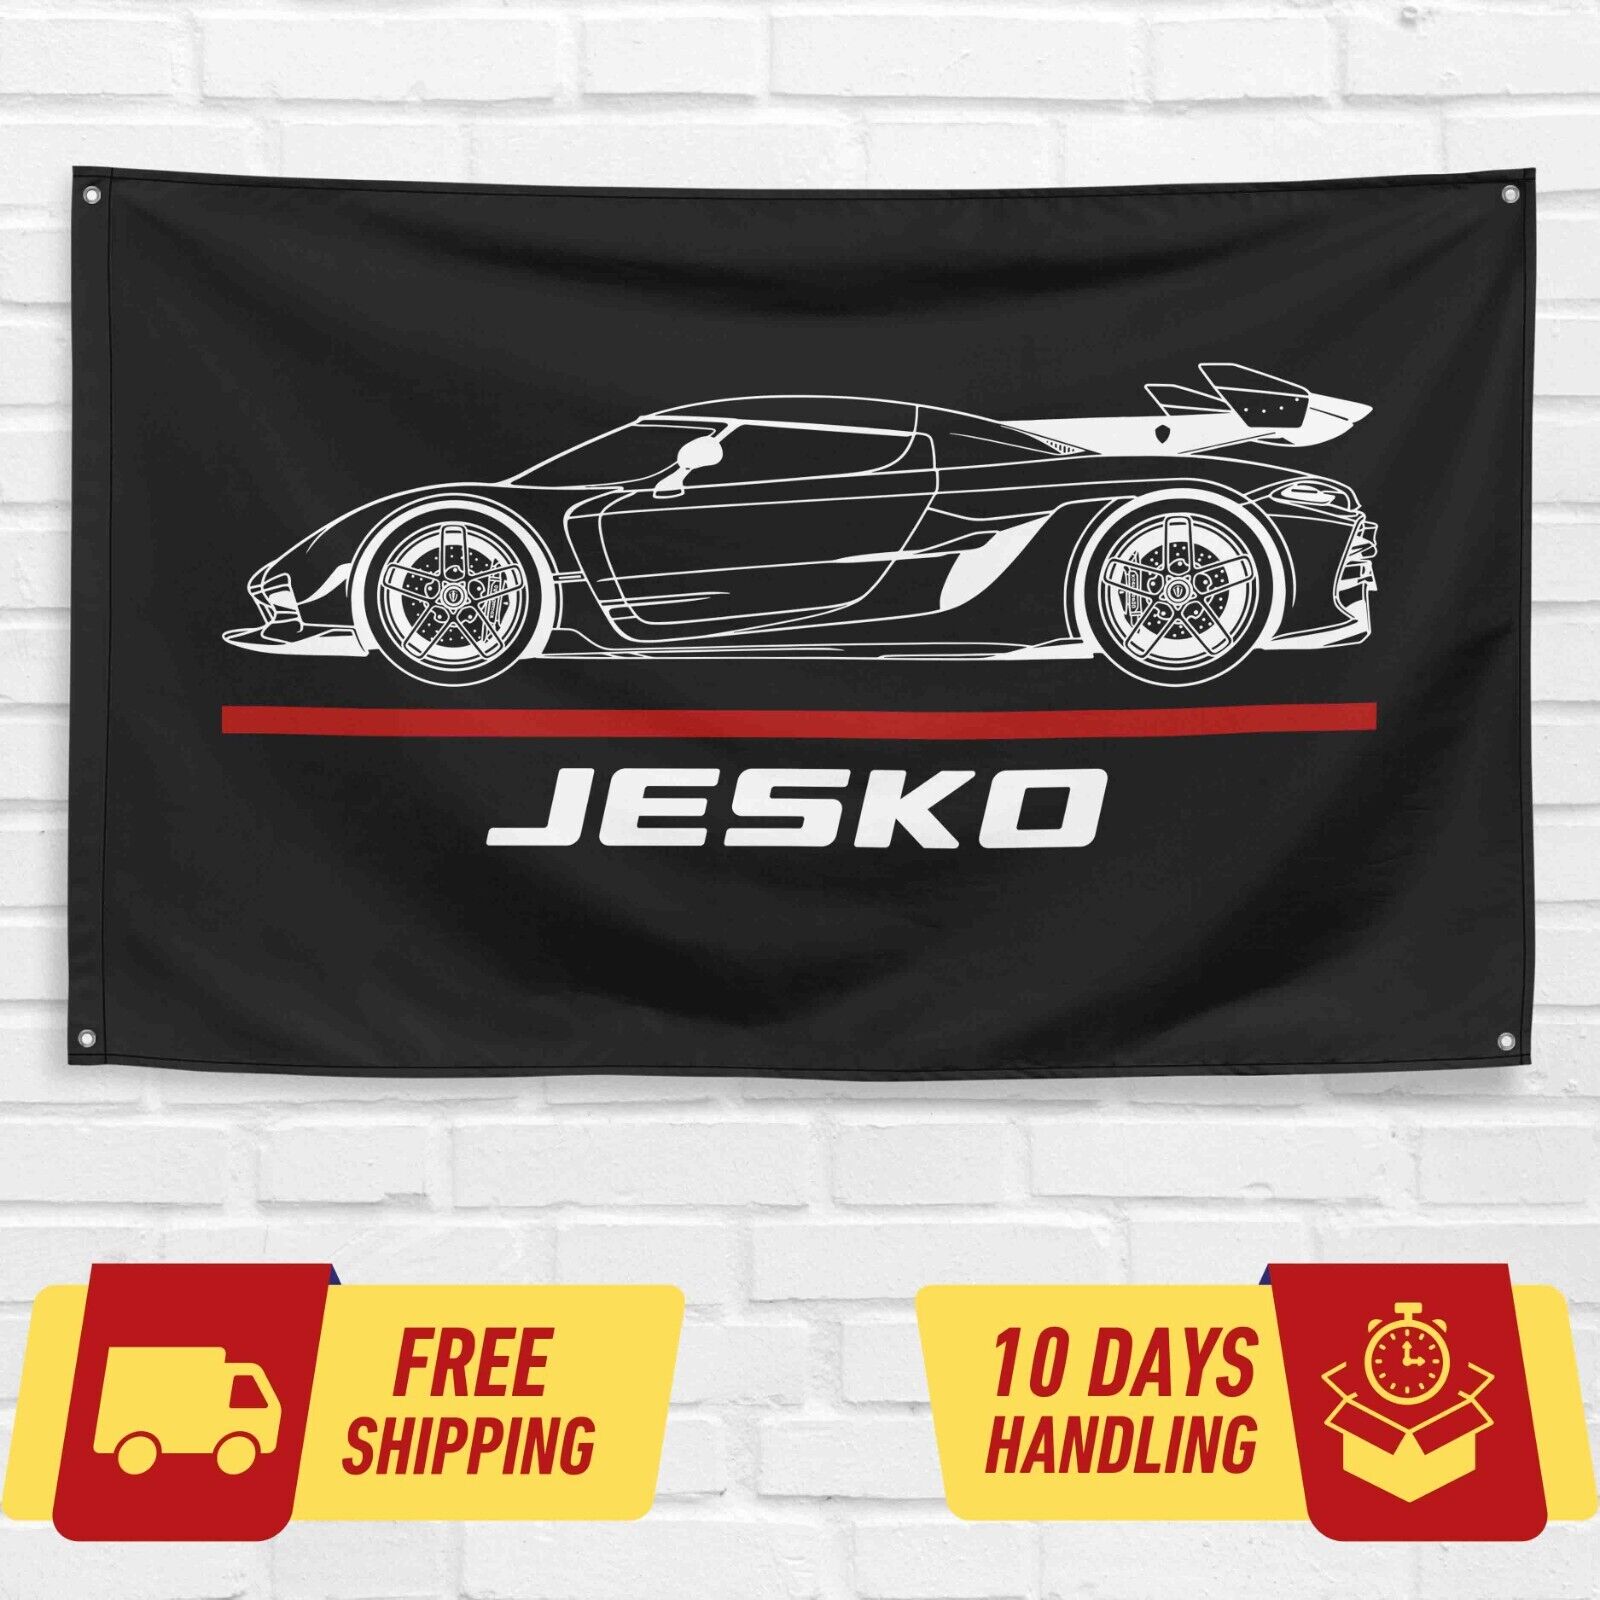 For Koenigsegg Jesko Supercar Car Enthusiast 3x5 ft Flag Birthday Gift Banner